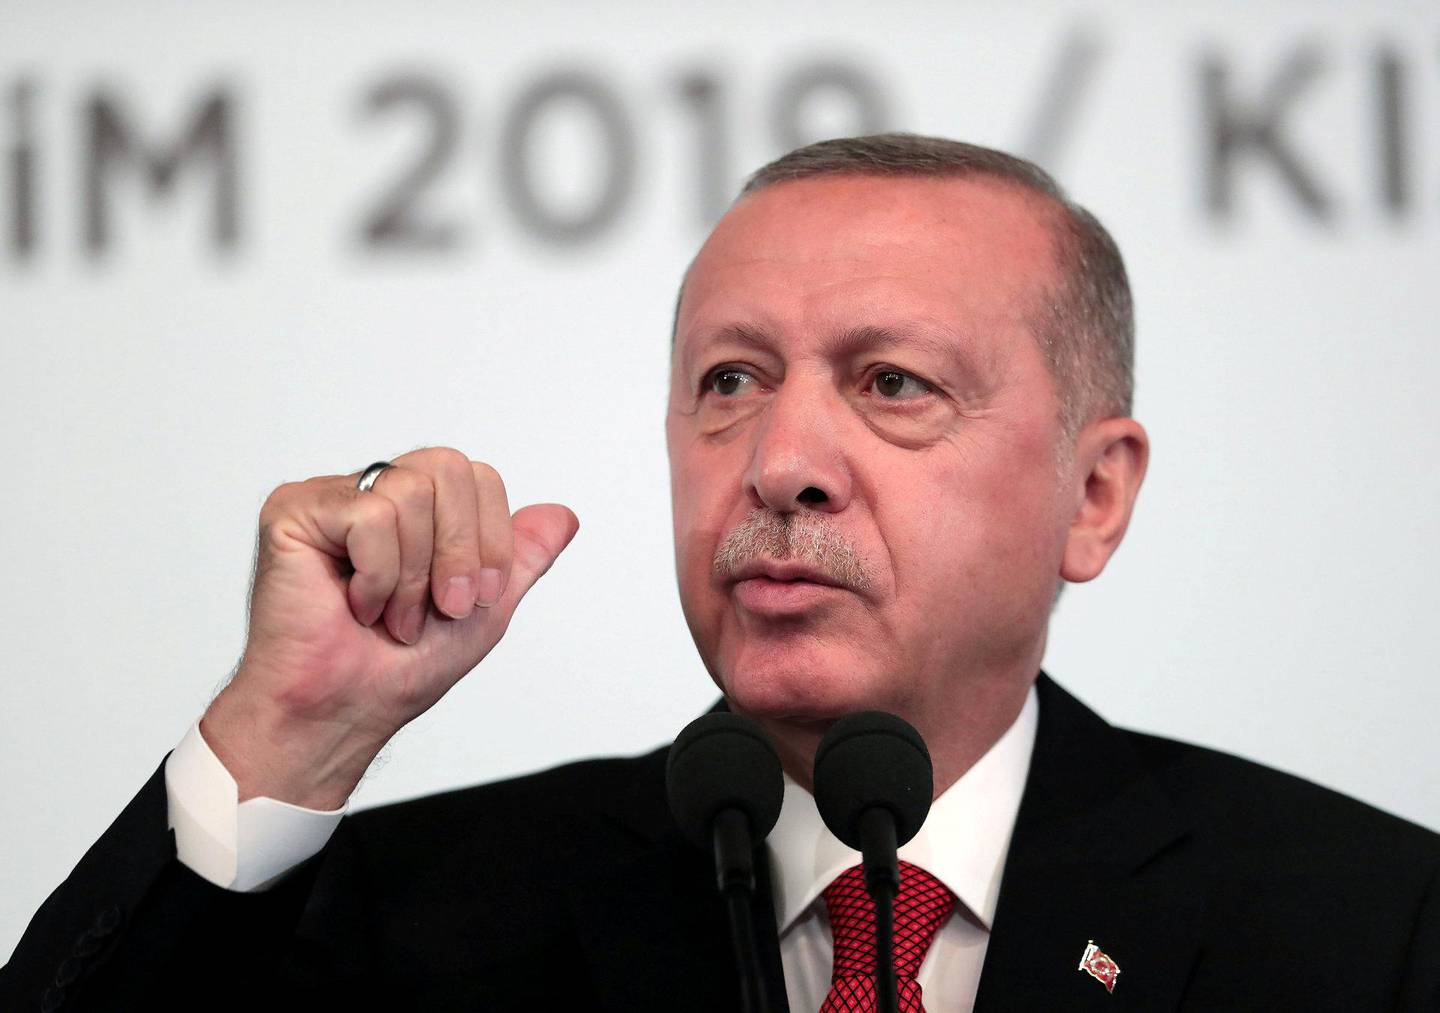 Tyrkias president Recep Tayyip Erdogan har i flere år søkt å ta kontrollen over det kurdiske området på den syriske siden av grensen. FOTO: NTB SCANPIX